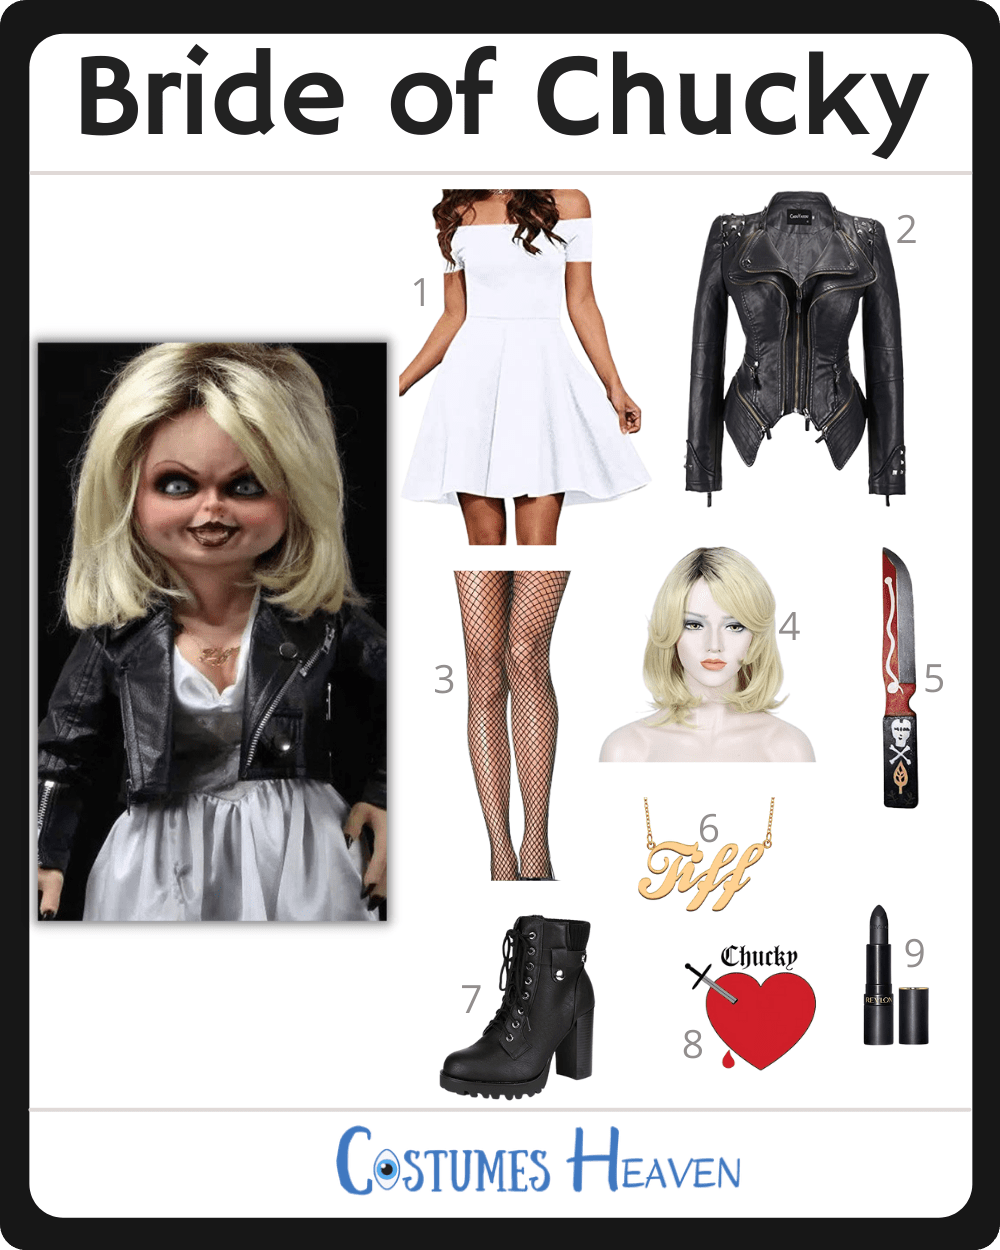 Bride of Chucky costume